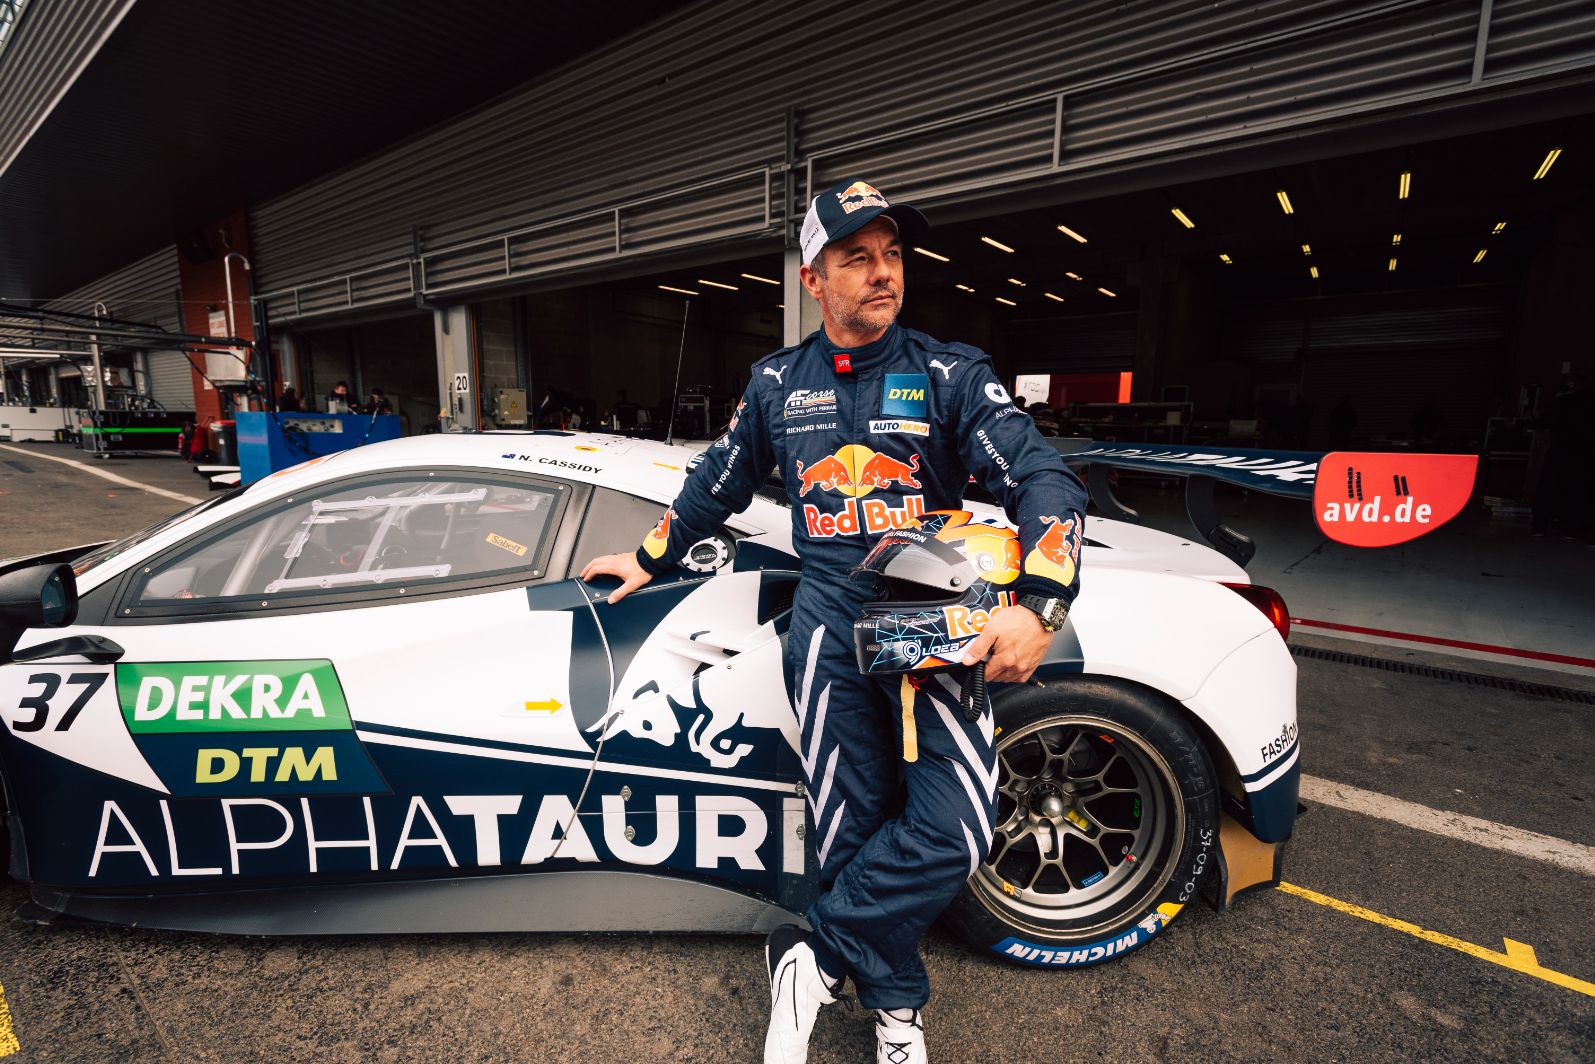 Sébastien Loeb, o nove vezes Campeão do Mundo de Rally estreia-se em Portimão, no DTM